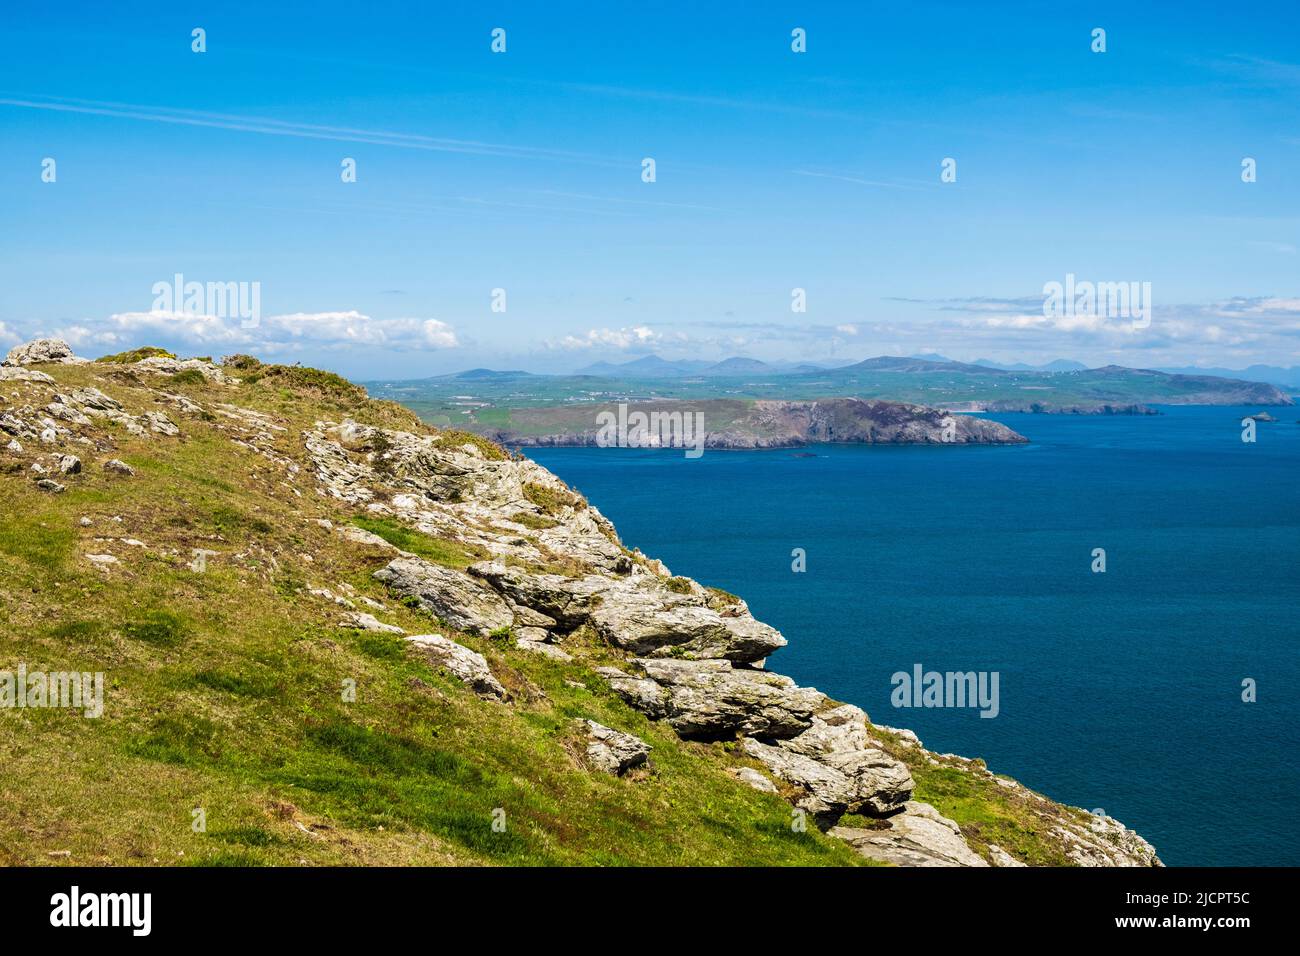 Blick über das ruhige blaue Meer zur Halbinsel Llyn vom Berg Mynydd Enlli auf Ynys Enlli oder Bardsey Island an der walisischen Westküste. Gwynedd, Nordwales, Großbritannien Stockfoto